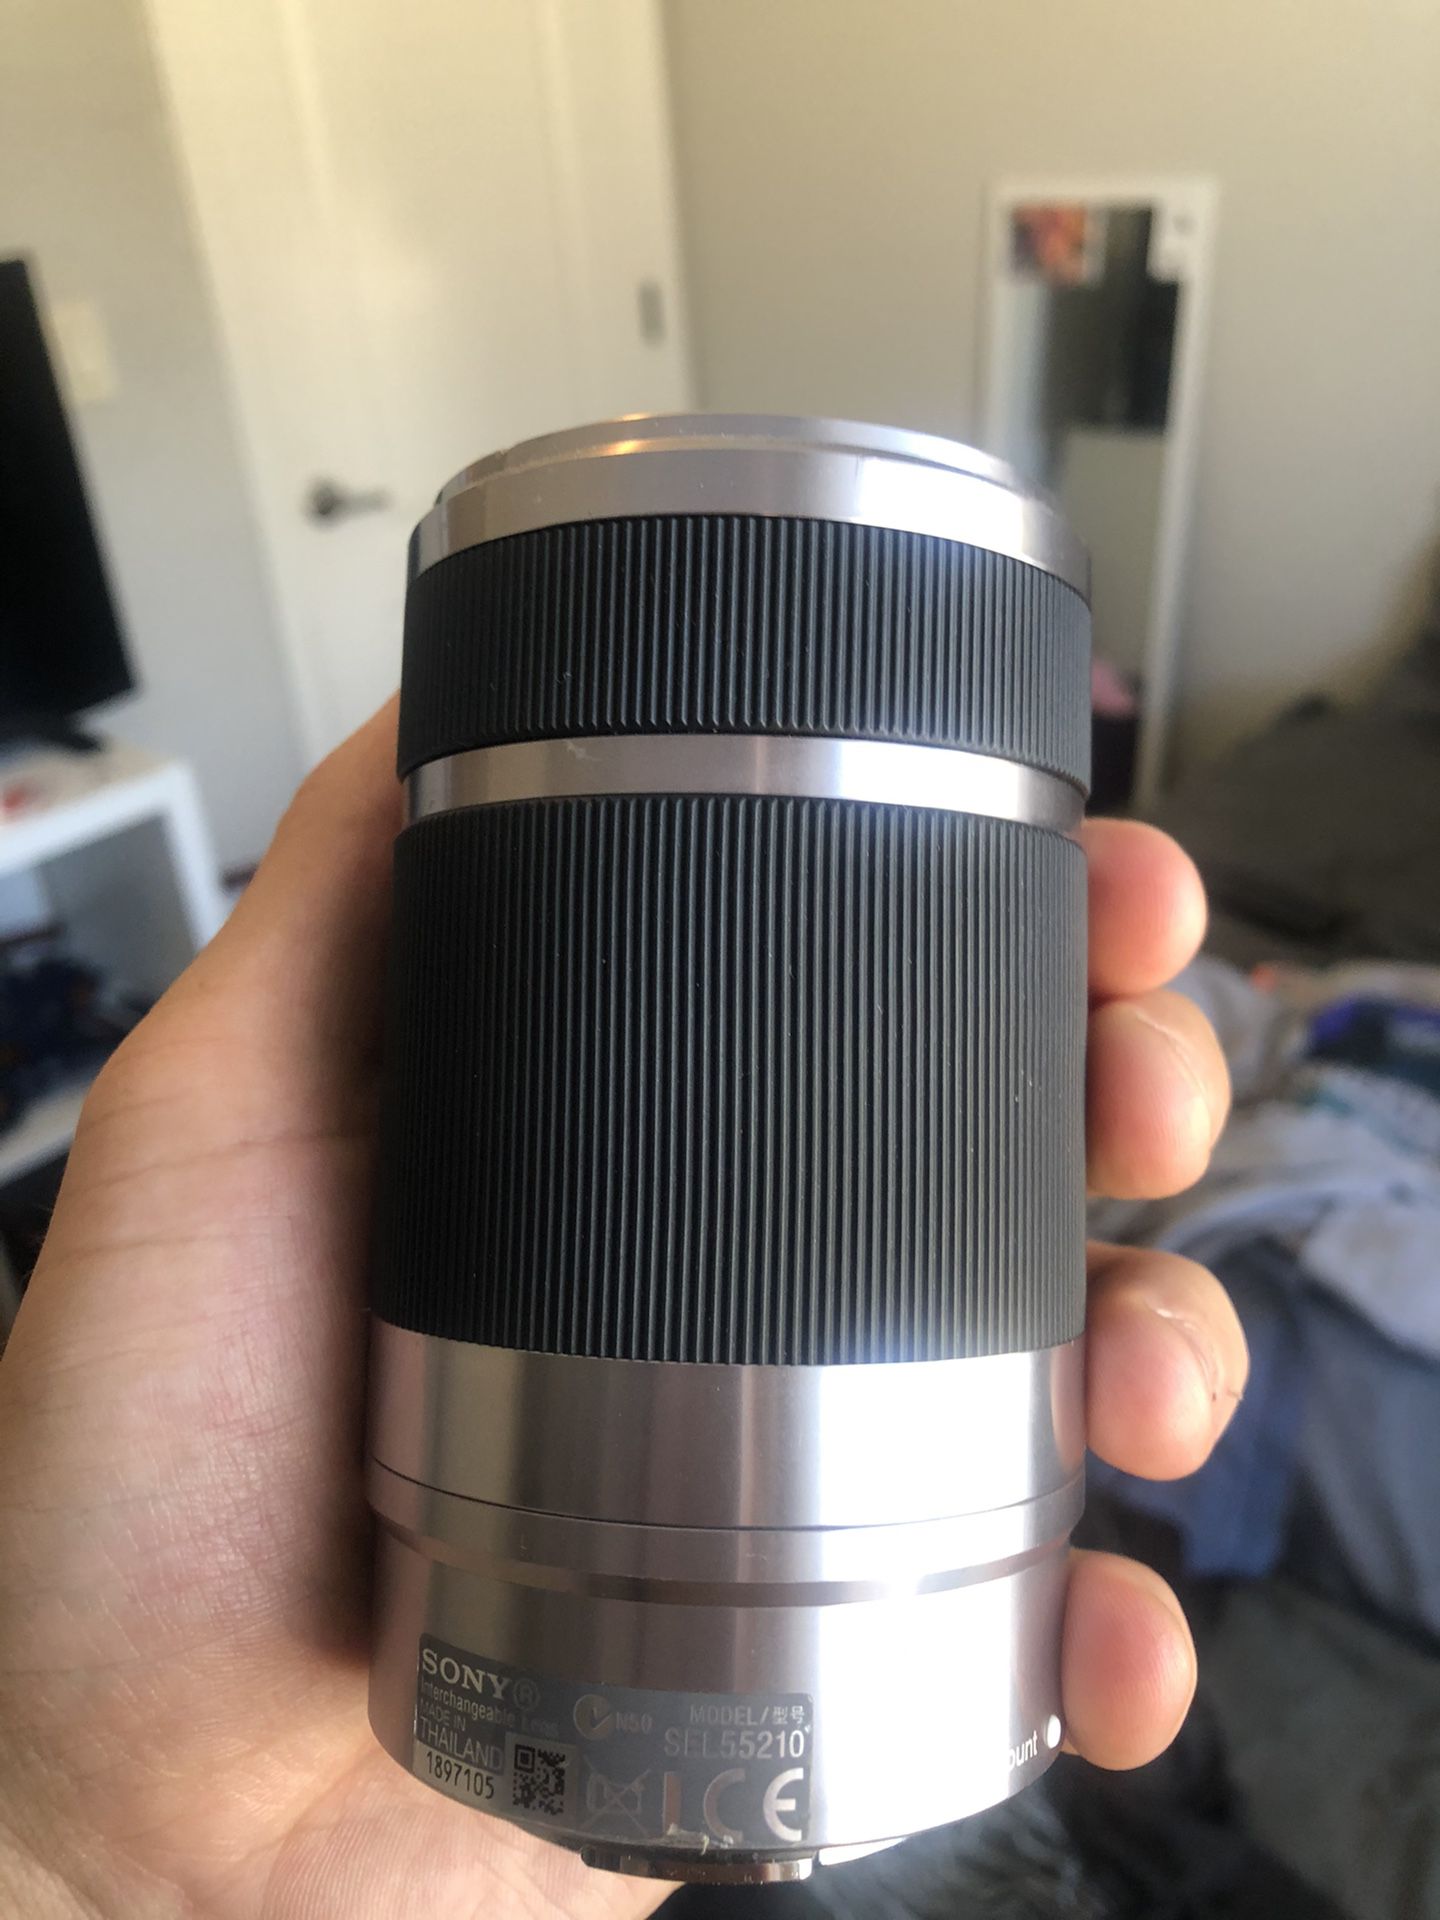 Sony 55-210mm f4.5-6.3 apsc e mount lens